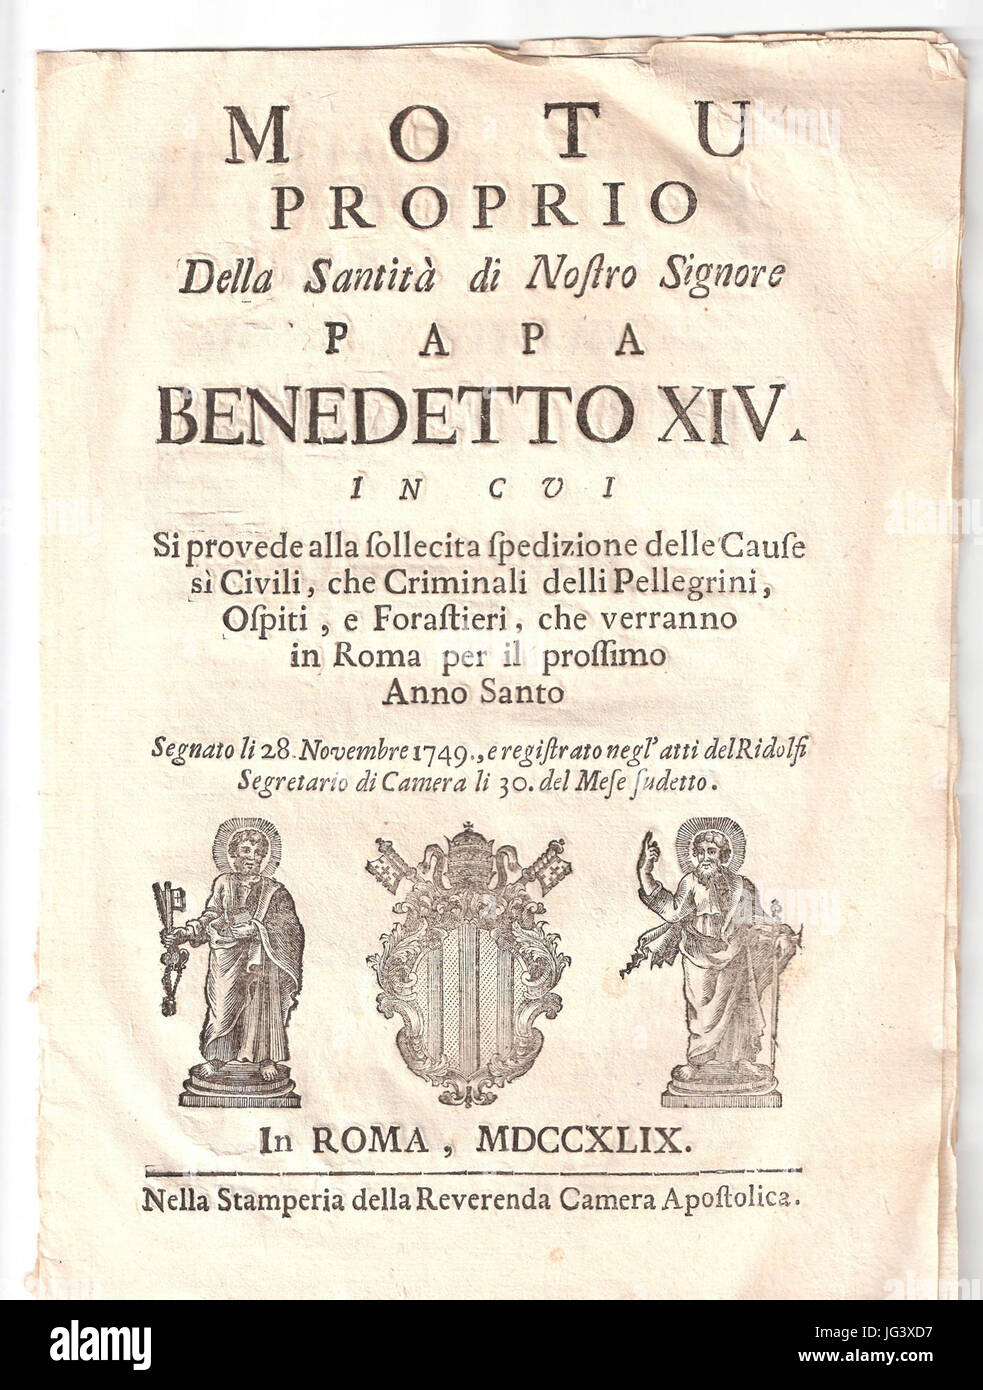 Motu Proprio Della Santità di Nostro Signore Papst Benedictus XIV Stockfoto